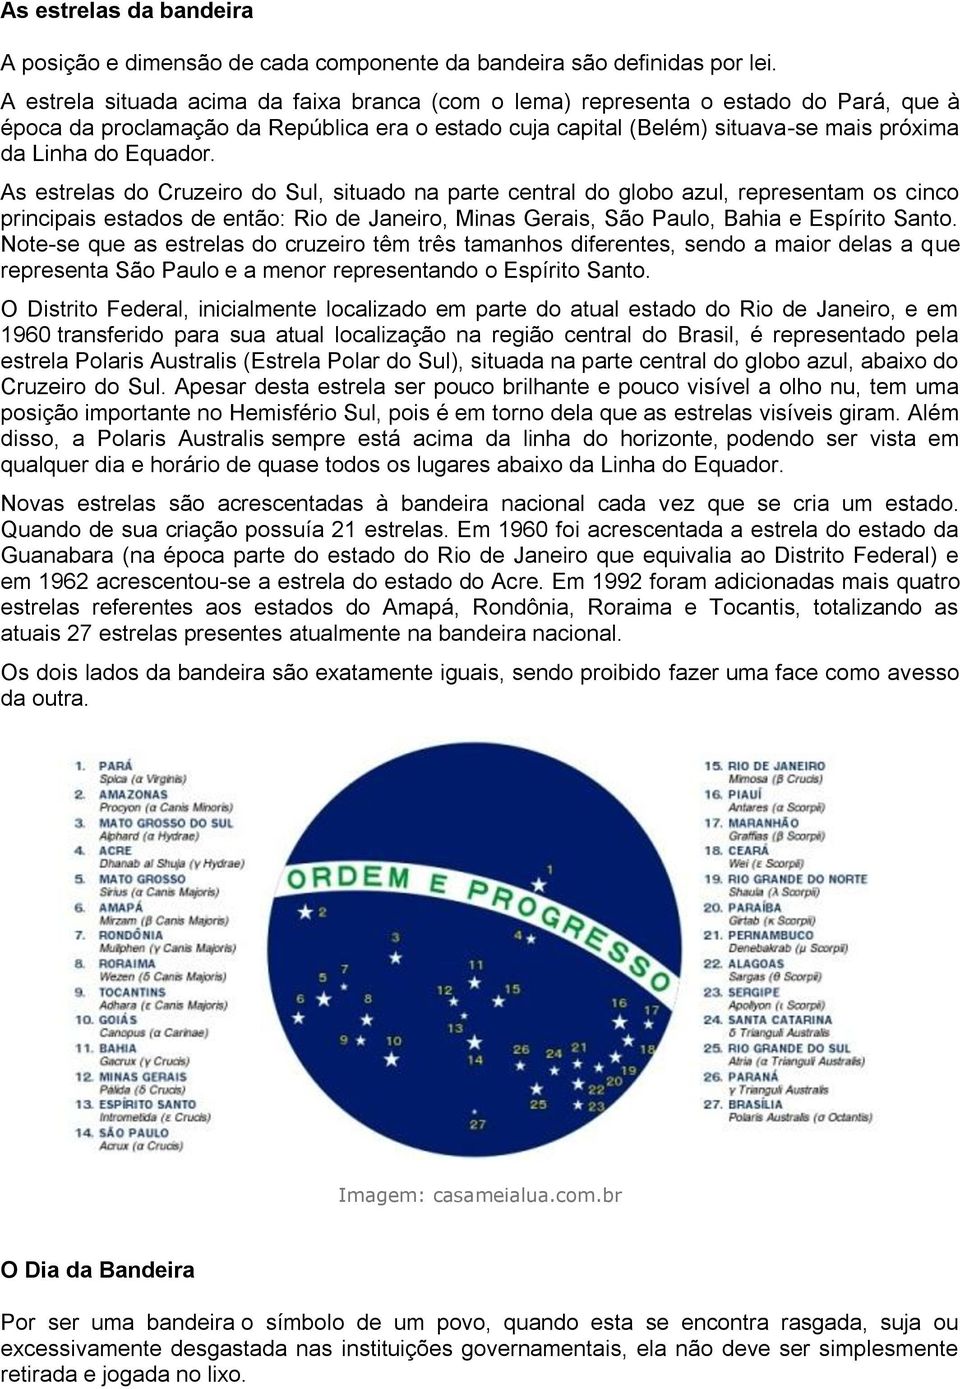 As estrelas do Cruzeiro do Sul, situado na parte central do globo azul, representam os cinco principais estados de então: Rio de Janeiro, Minas Gerais, São Paulo, Bahia e Espírito Santo.